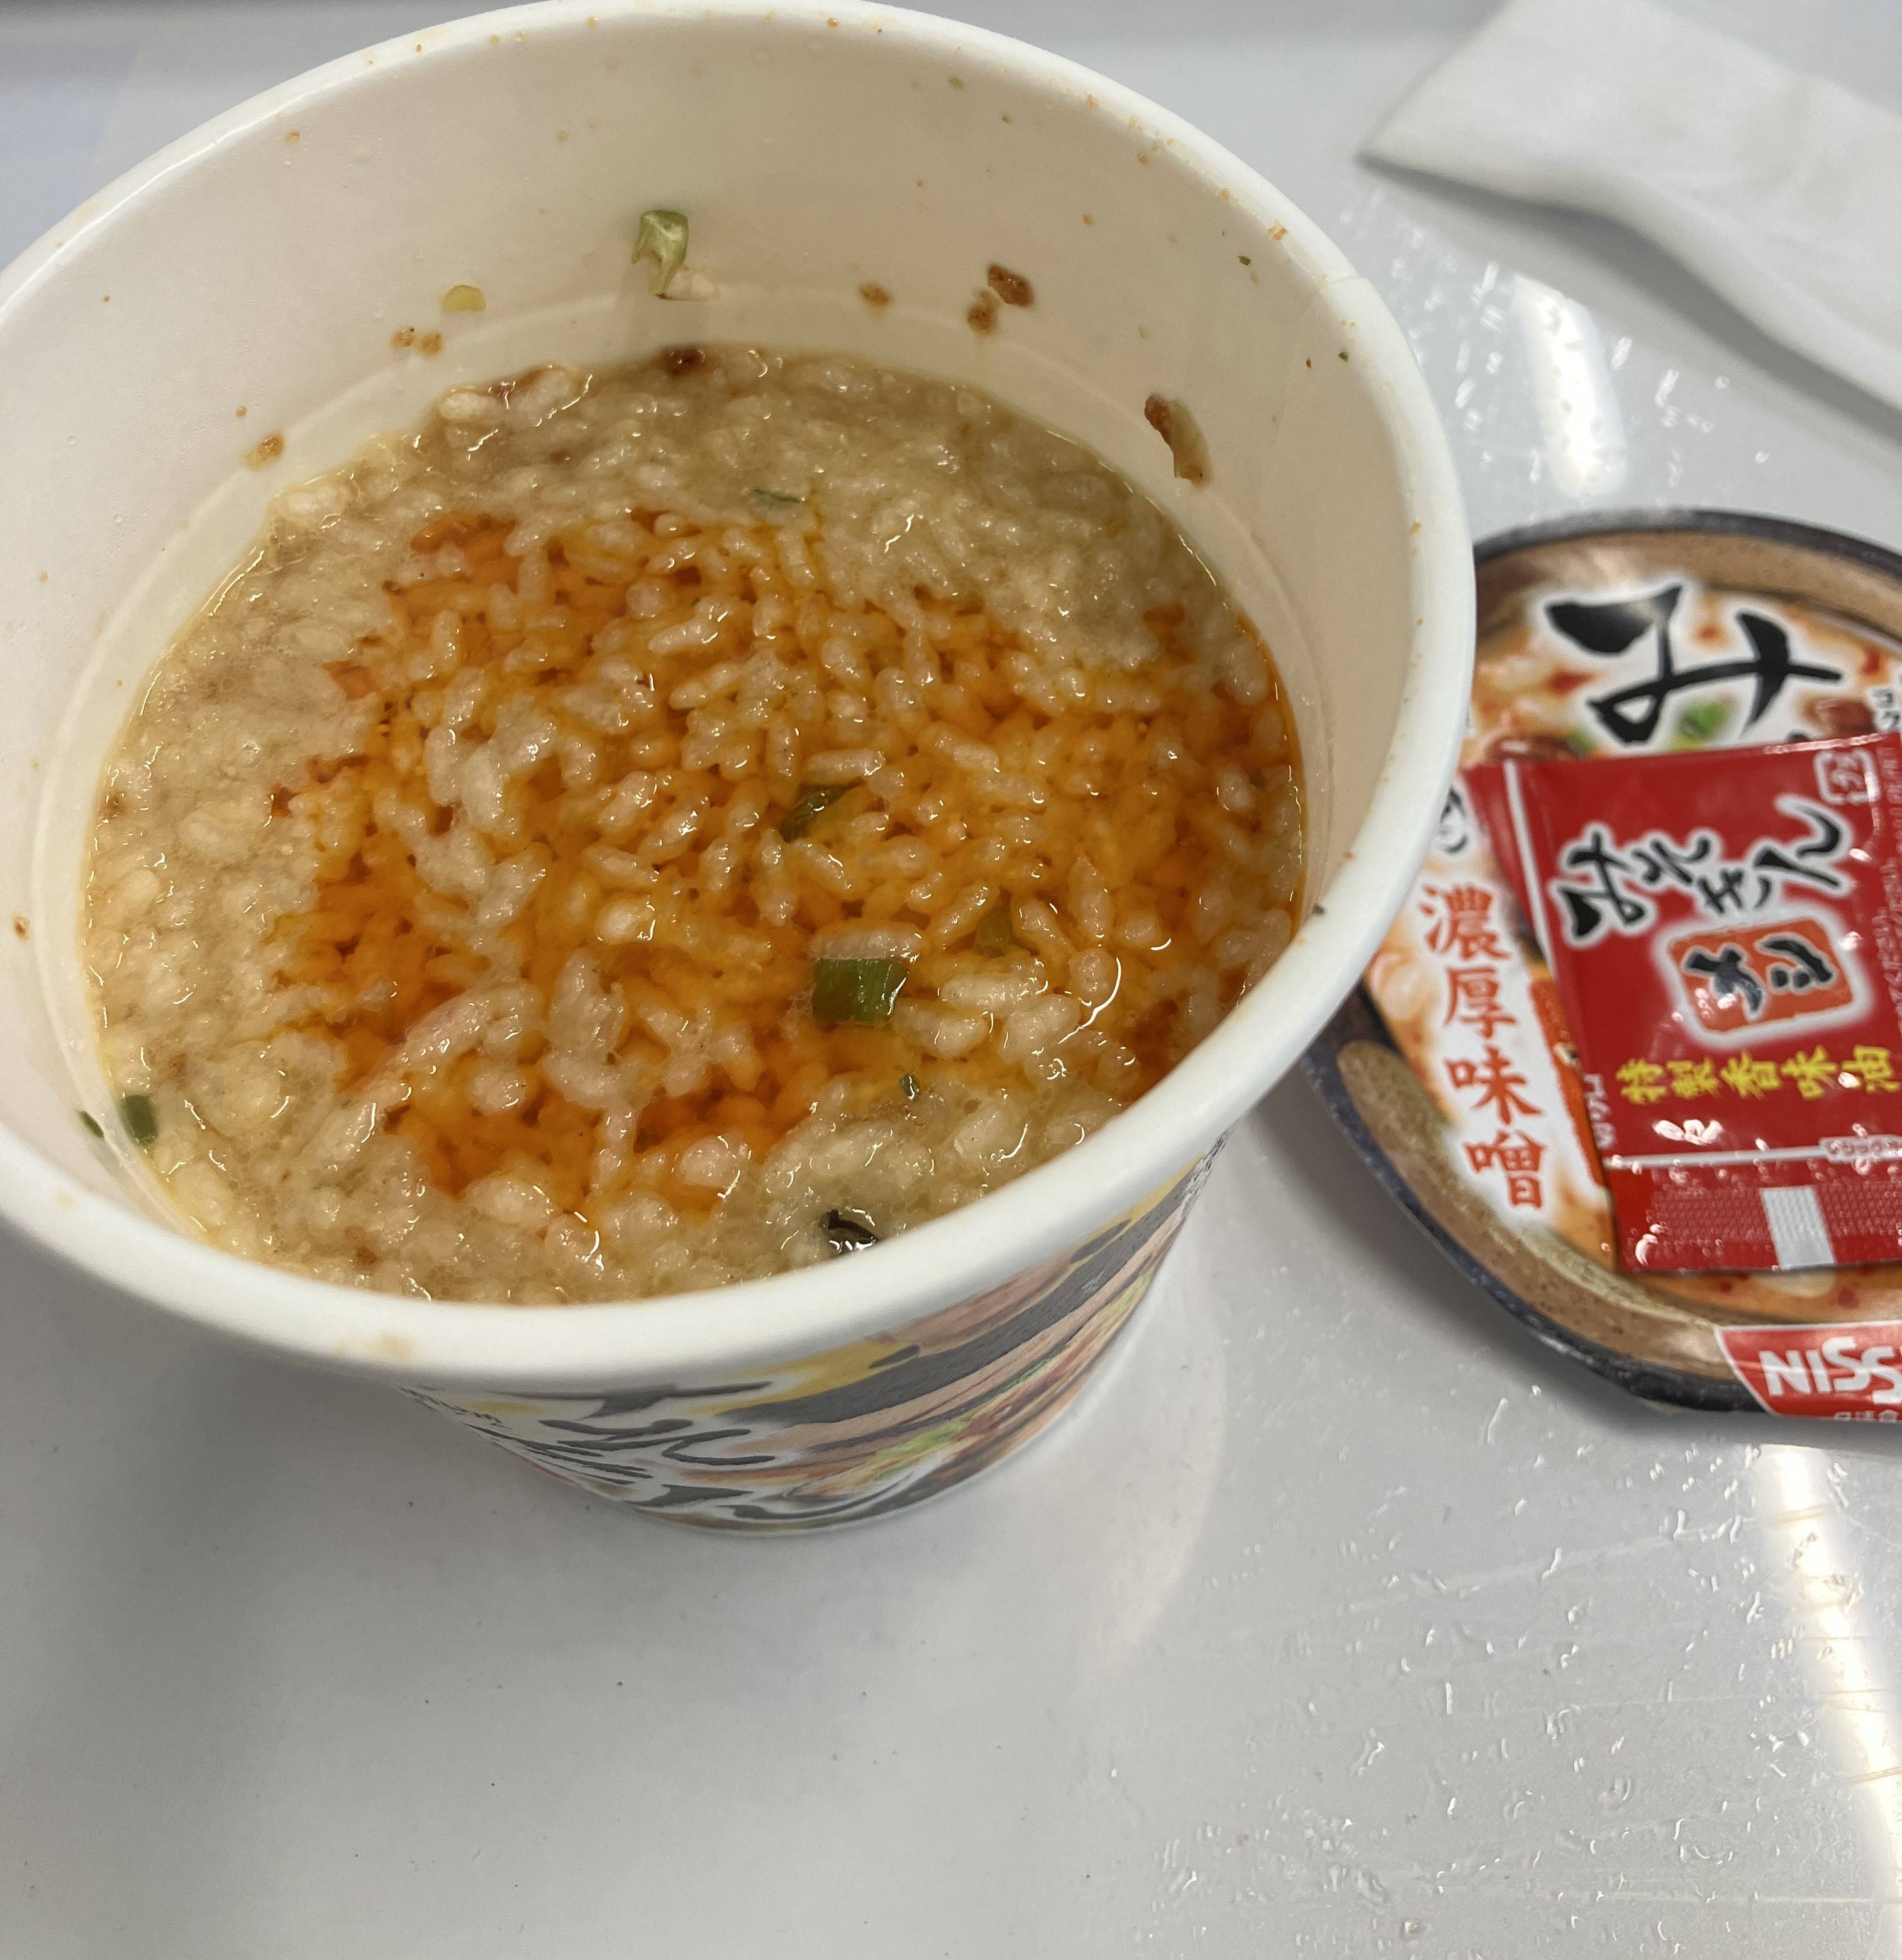 「みそきん」を食する😋 AKBT 土崎港店のブログ 写真2